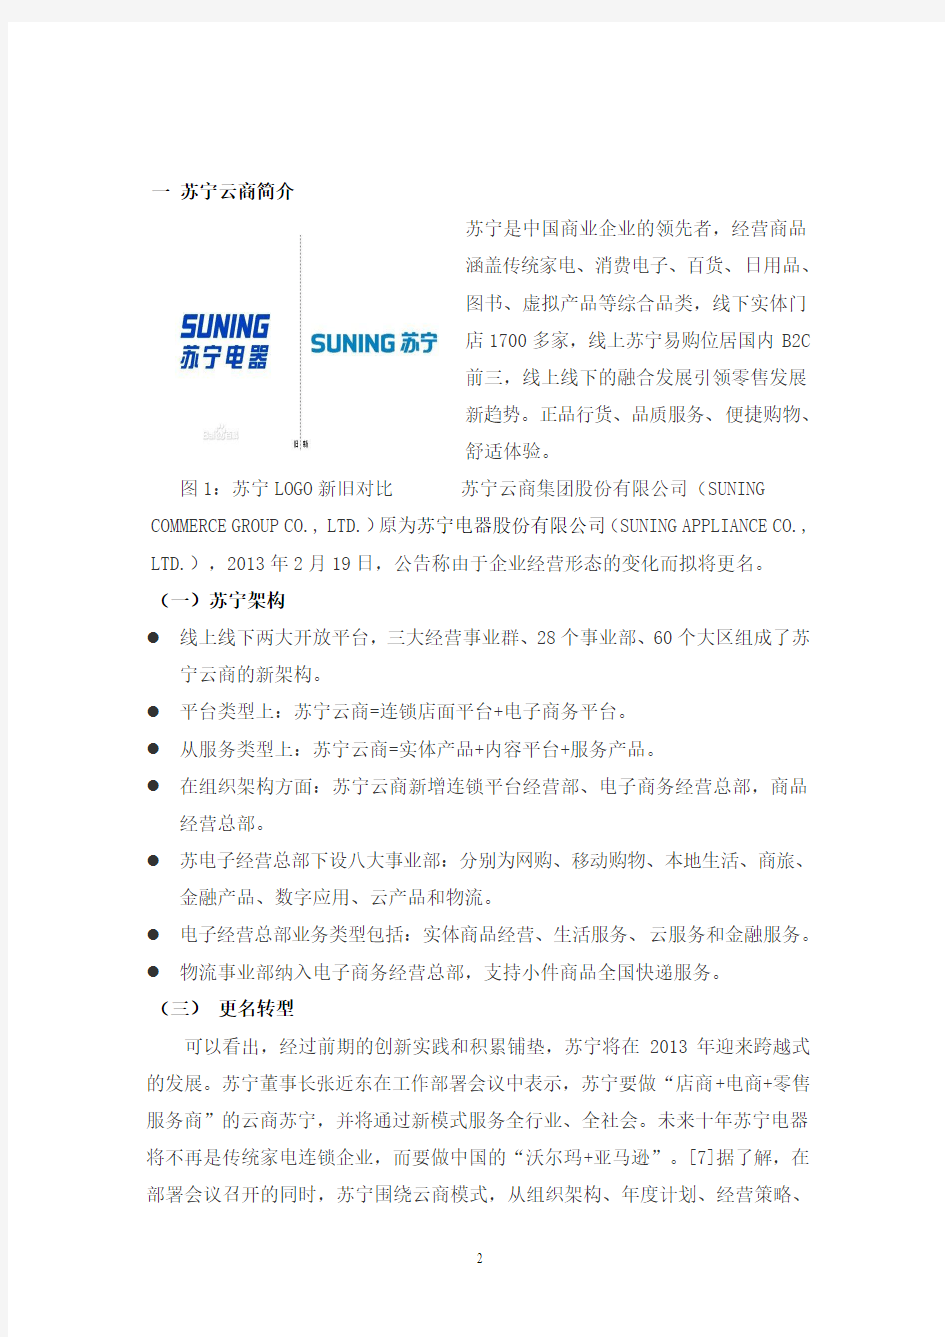 苏宁云商企业战略分析报告书 swot 五力模型分析